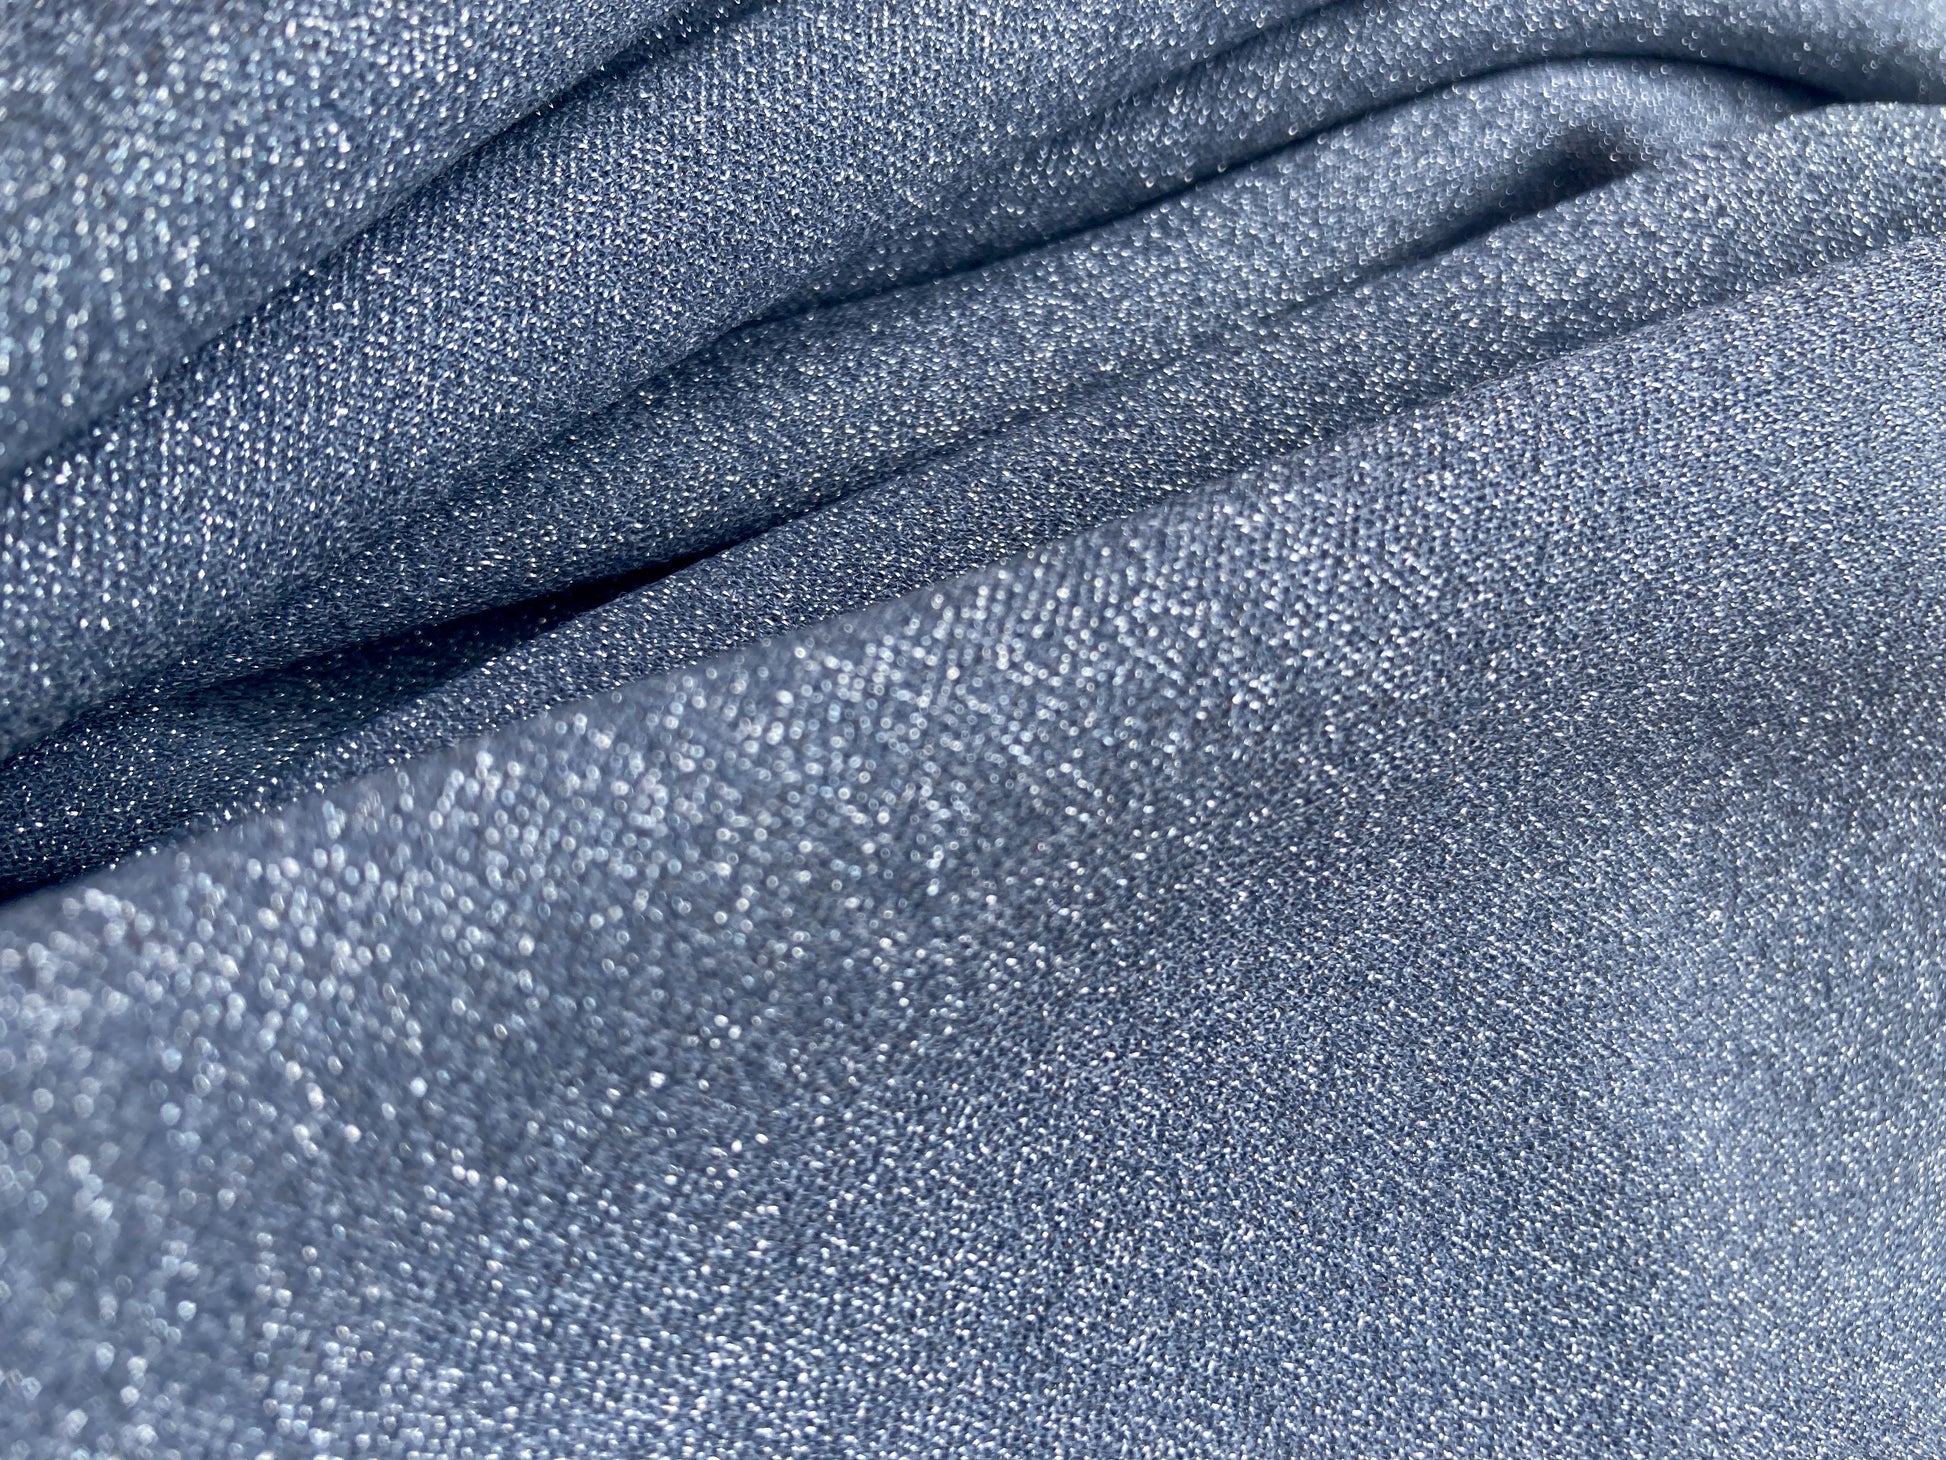 Pantalón wide leg brillante noor, en tela gris  elástica que se ajusta perfecto al cuerpo. 100% Colombiano